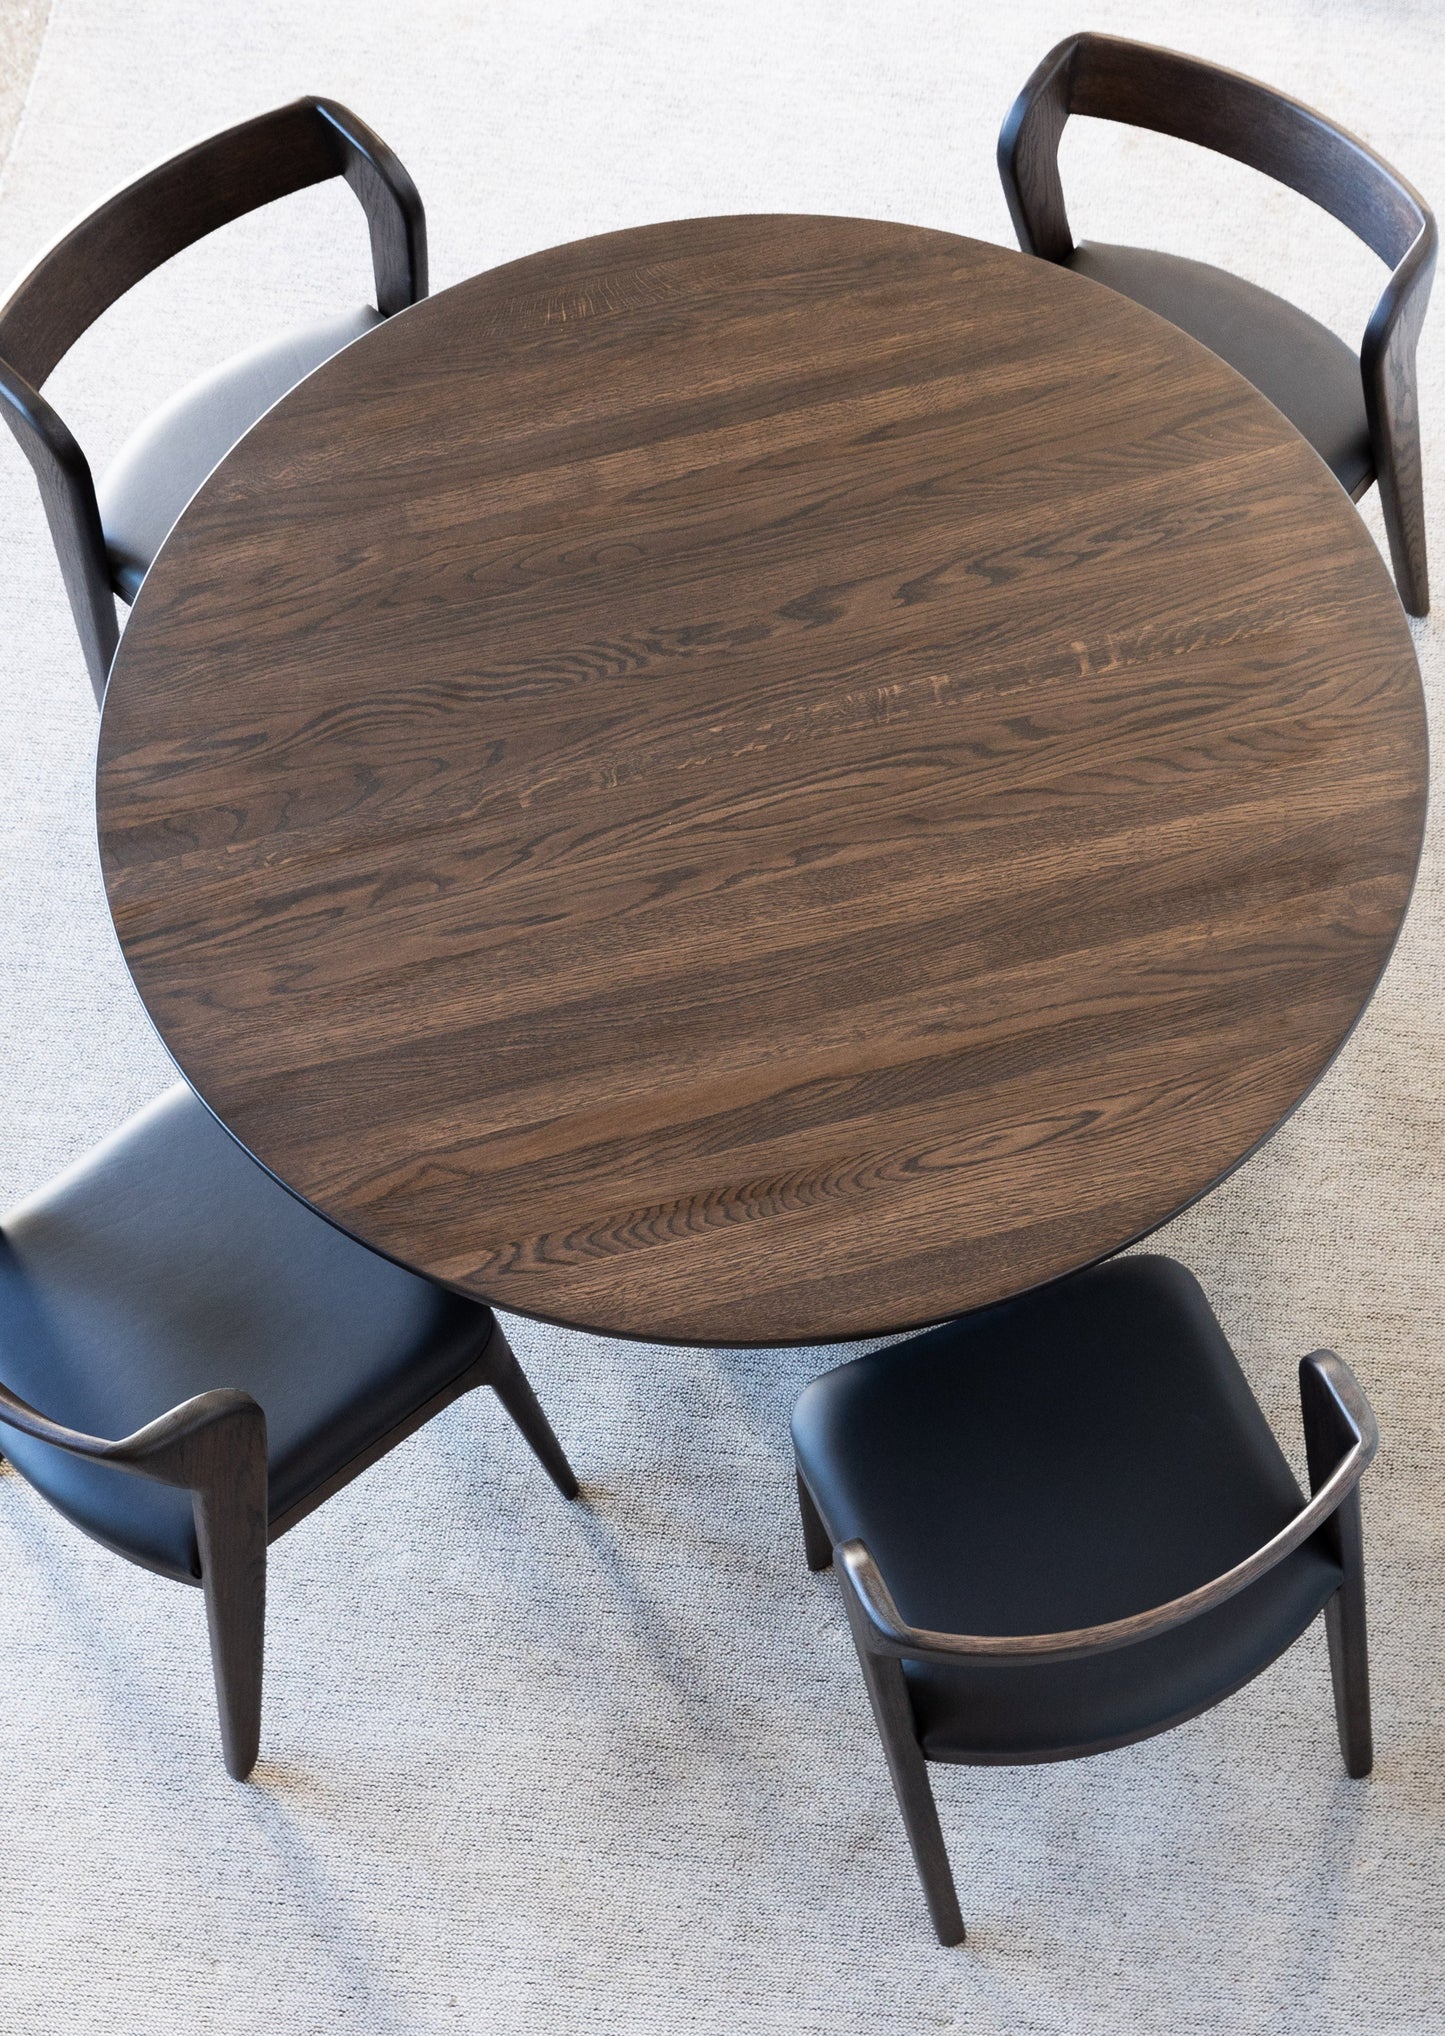 Spisebordet Lofoten ble inspirert av den vakre naturen i Lofoten. Den slanke og runde bordplaten ser visuelt lett og elegant ut. Bordets sokkel er det motsatte til bordplaten - den er massiv og kraftig. Til tross for de forskjellige proporsjonene, bordplaten og sokkelen skaper harmonisk kombinasjon. 